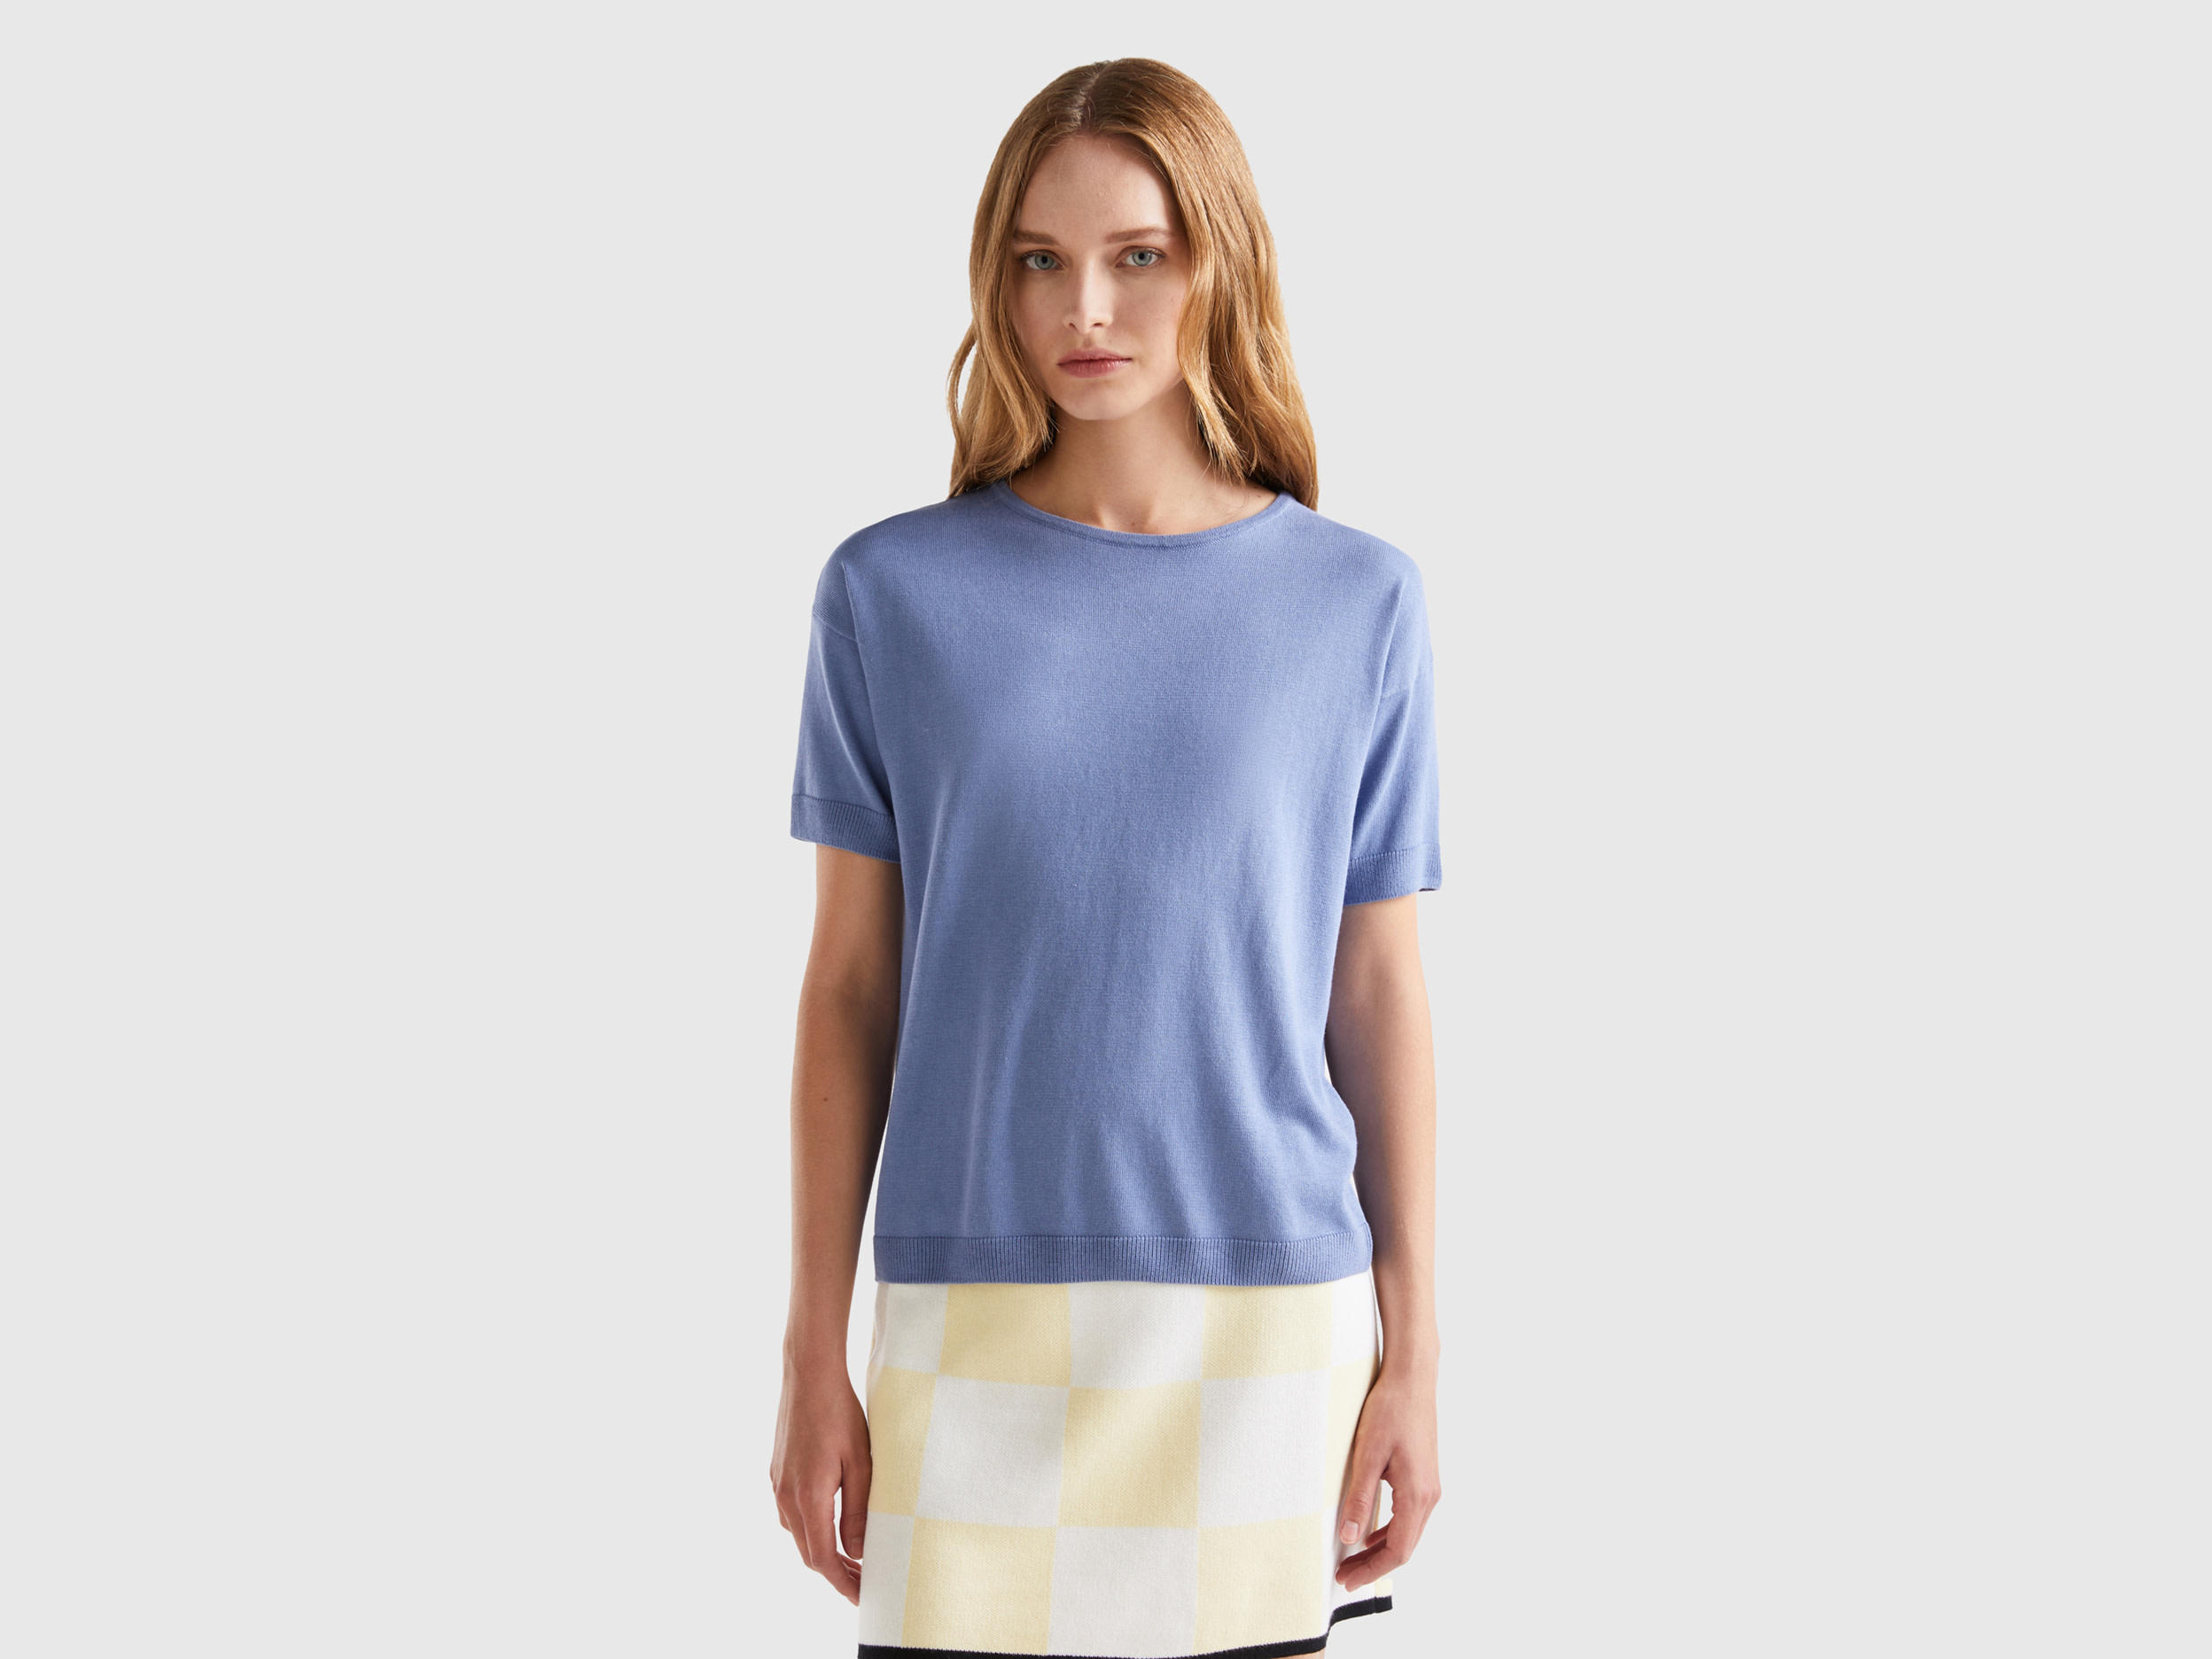 Benetton, Short Sleeve Sweater, size M, Light Blue, Women